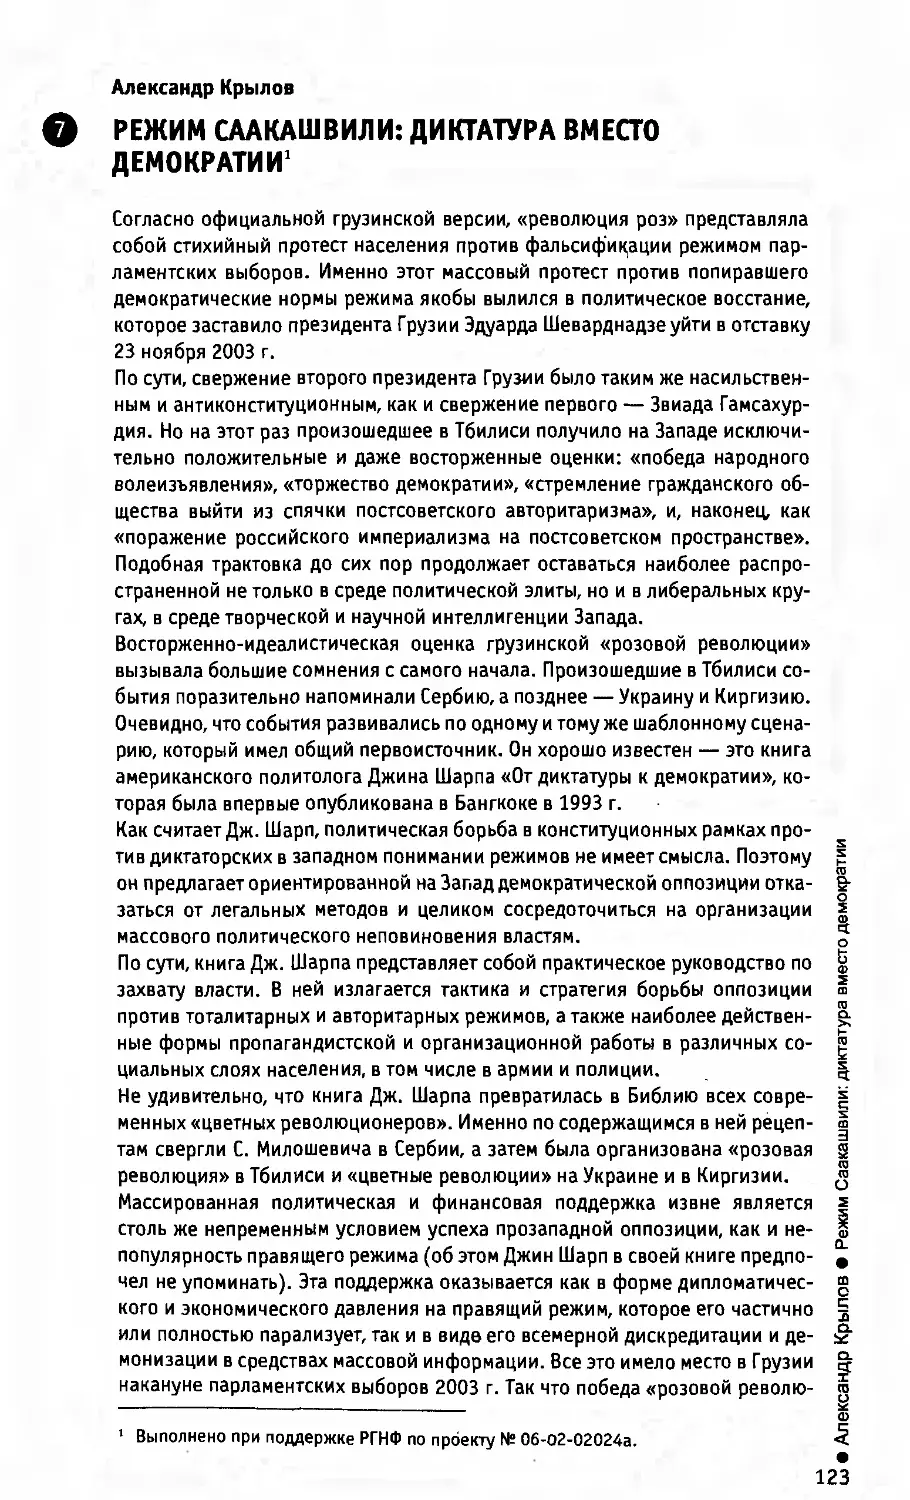 А. Крылов. Режим Саакашвили: диктатура вместо демократии